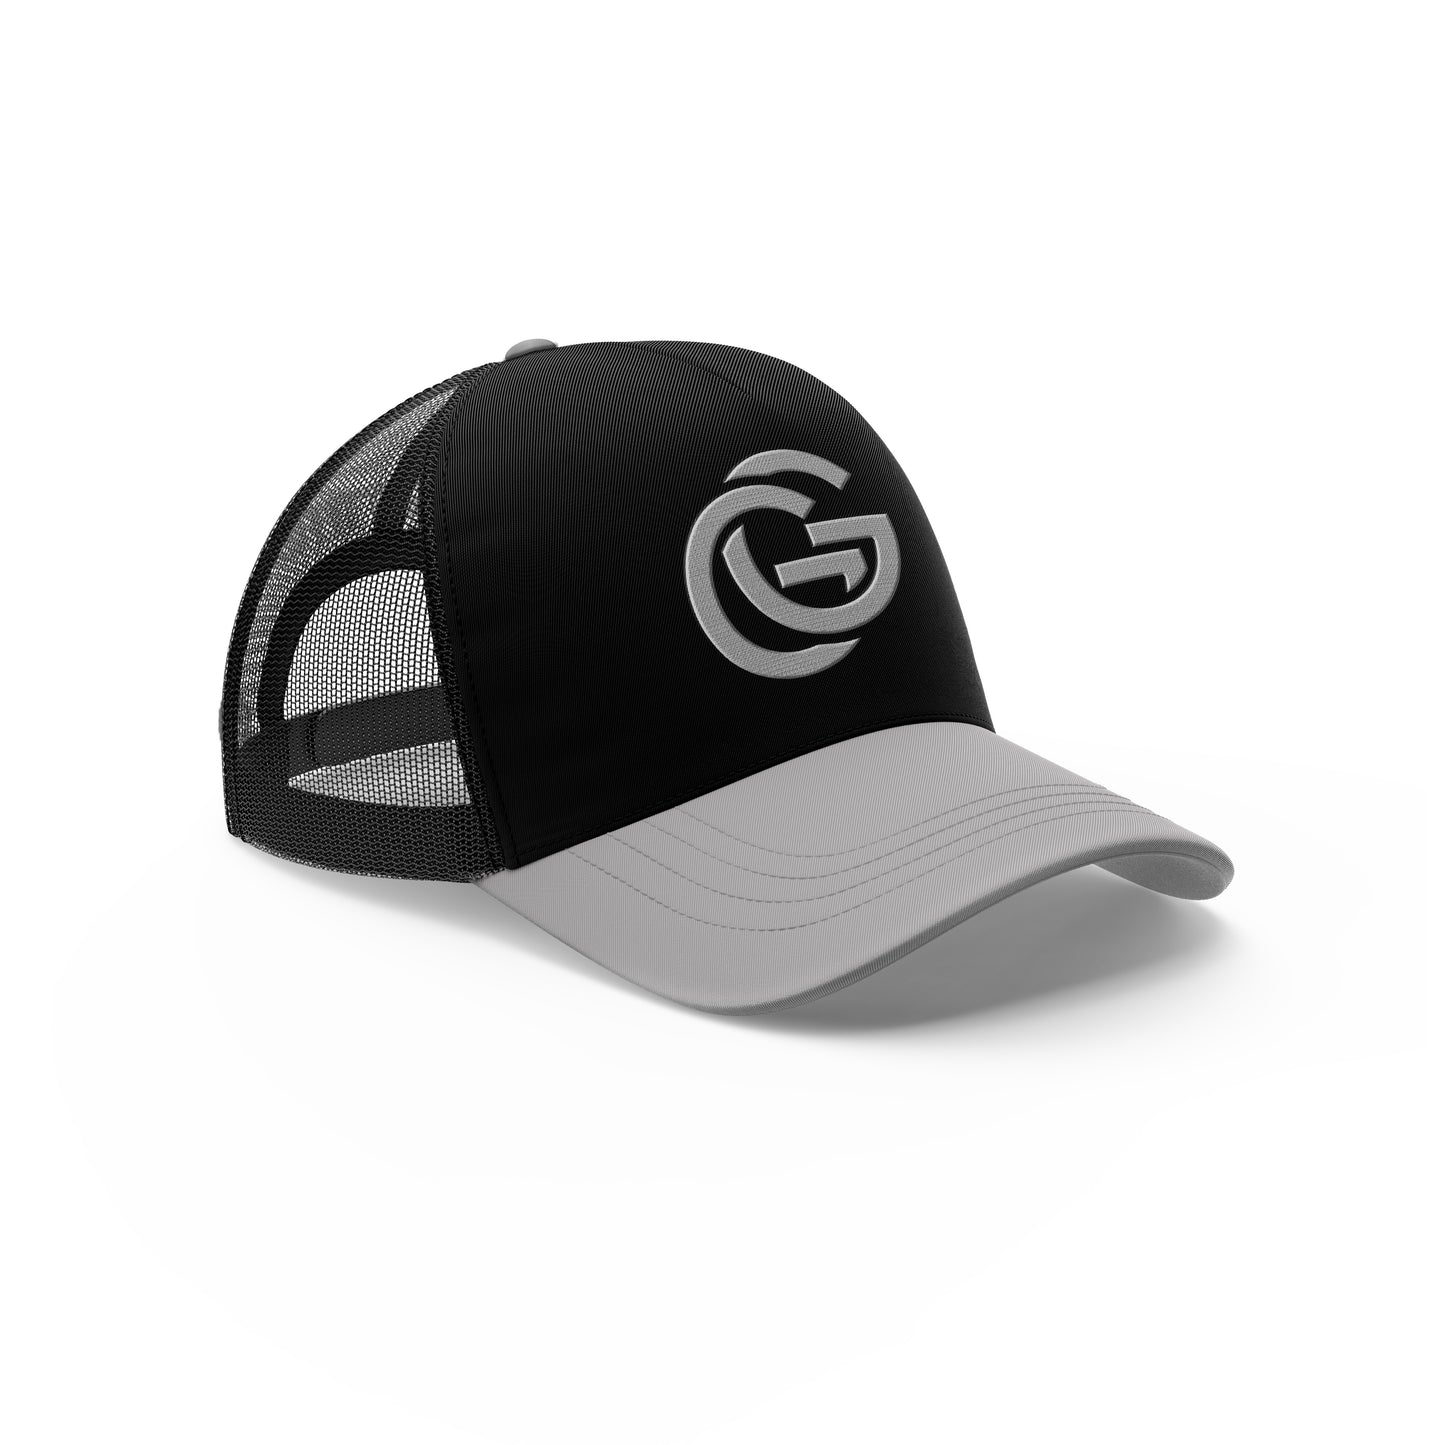 GG HAT BLACK/GRAY